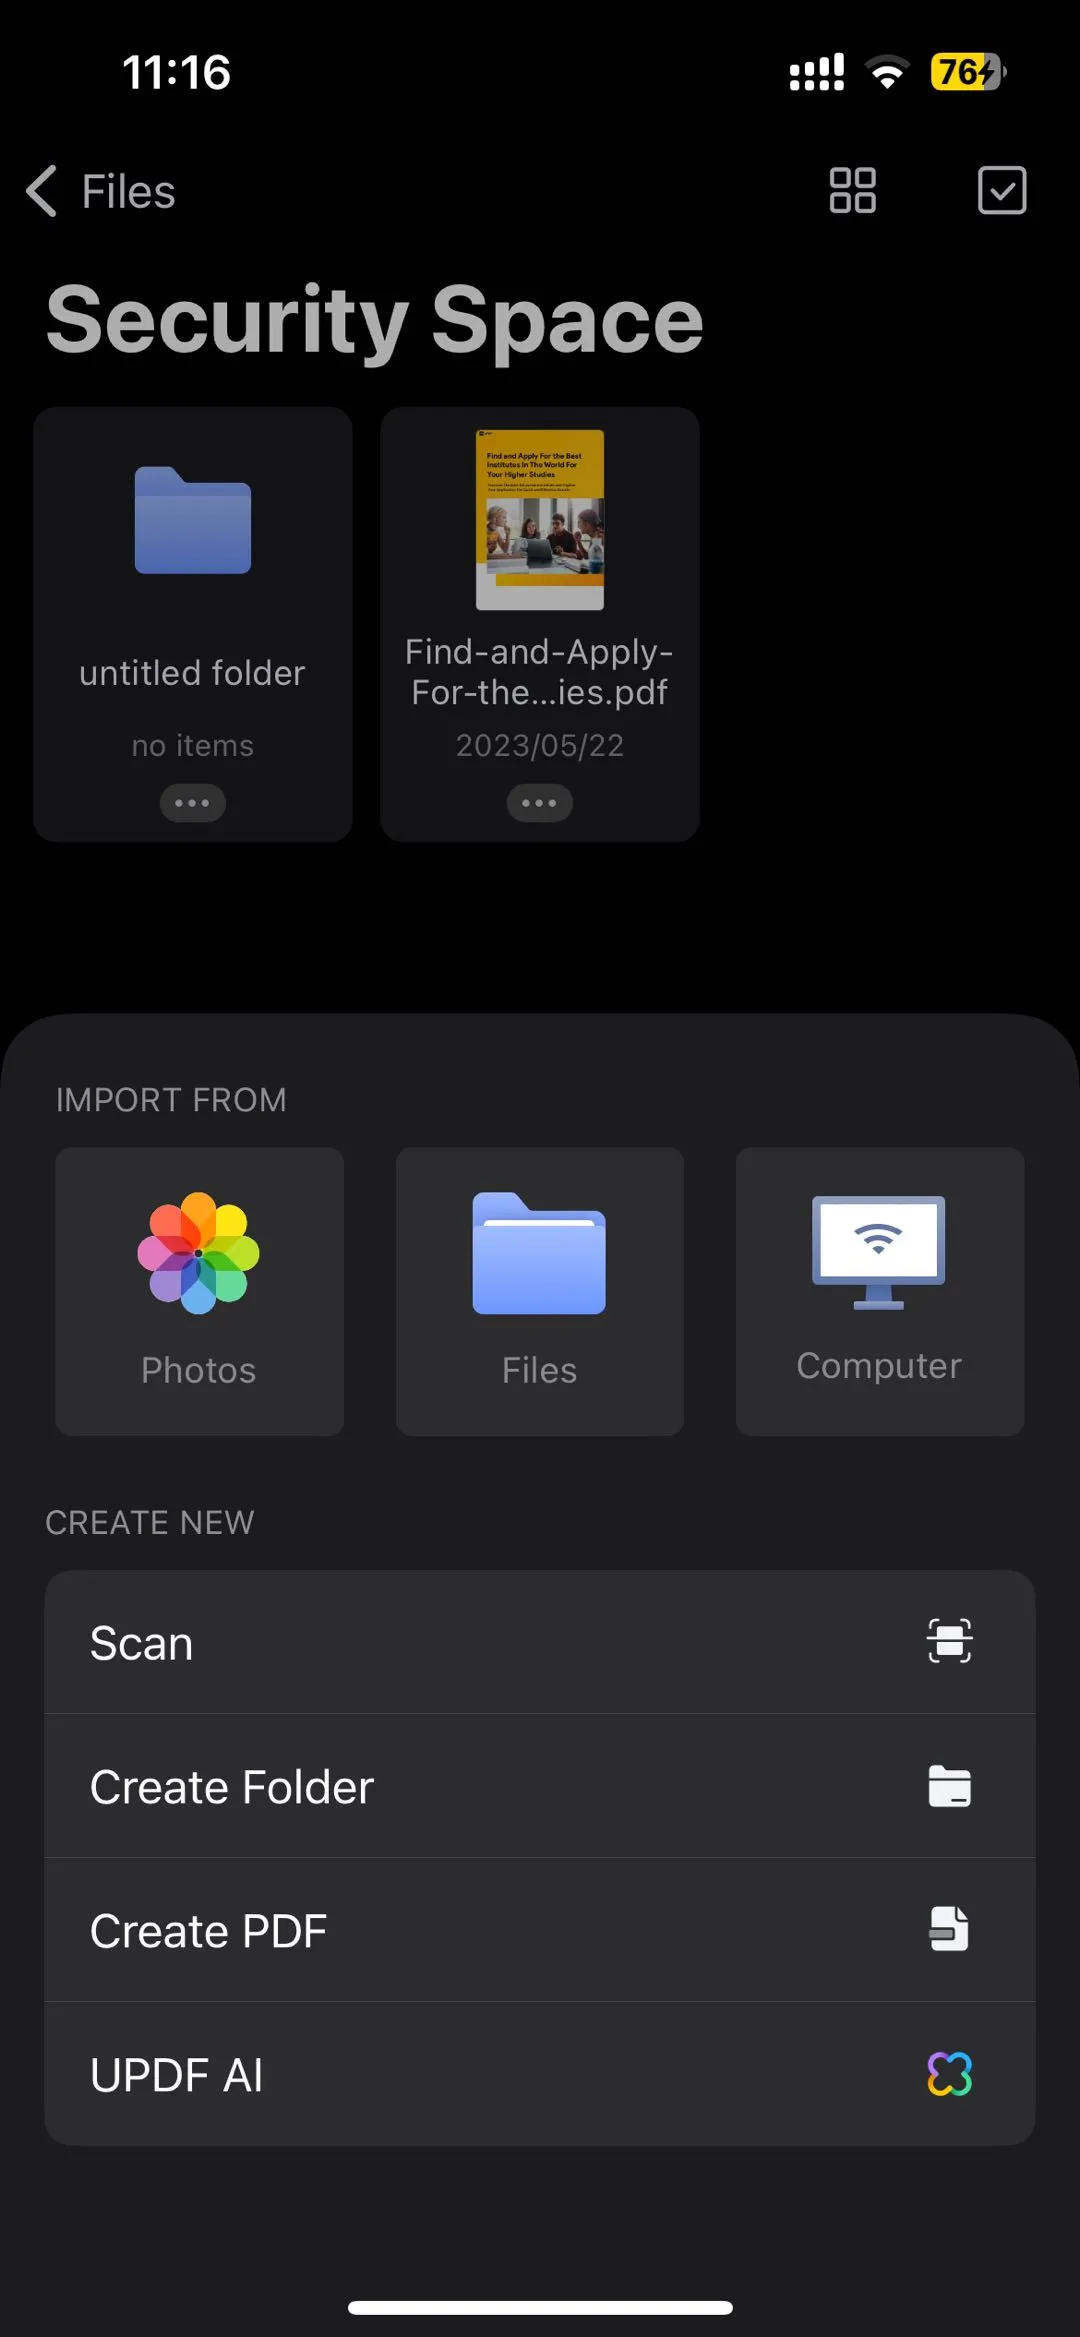 create folder on security space